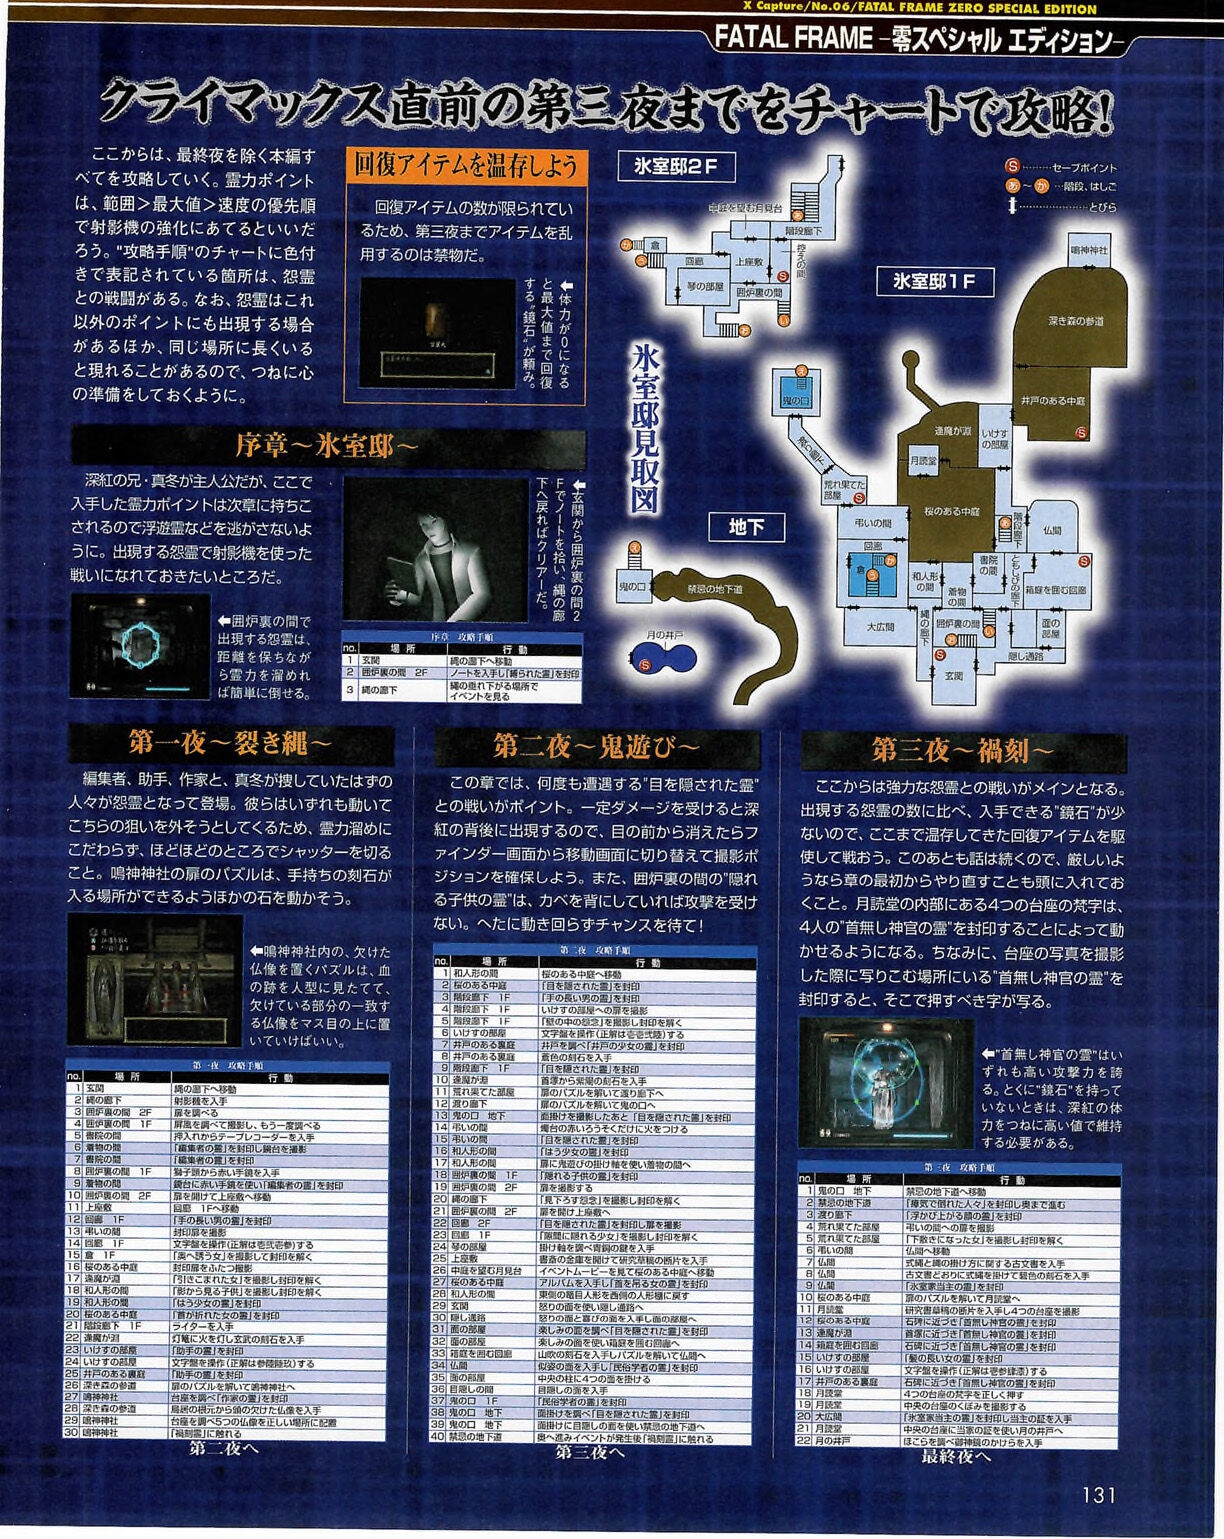 Famitsu_Xbox_2003-04_jp2 130